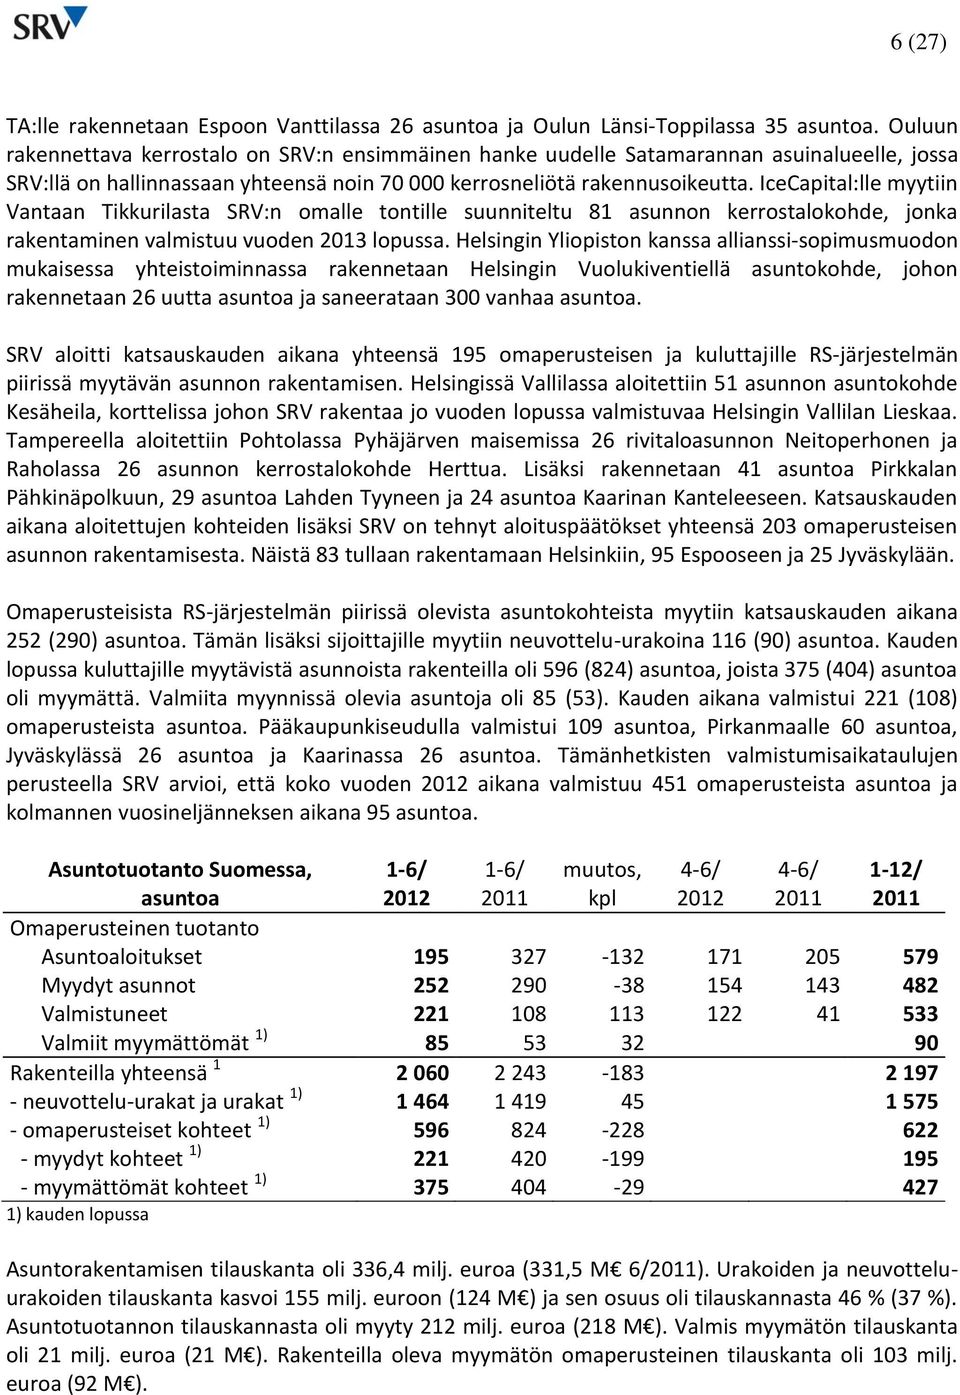 IceCapital:lle myytiin Vantaan Tikkurilasta SRV:n omalle tontille suunniteltu 81 asunnon kerrostalokohde, jonka rakentaminen valmistuu vuoden 2013 lopussa.